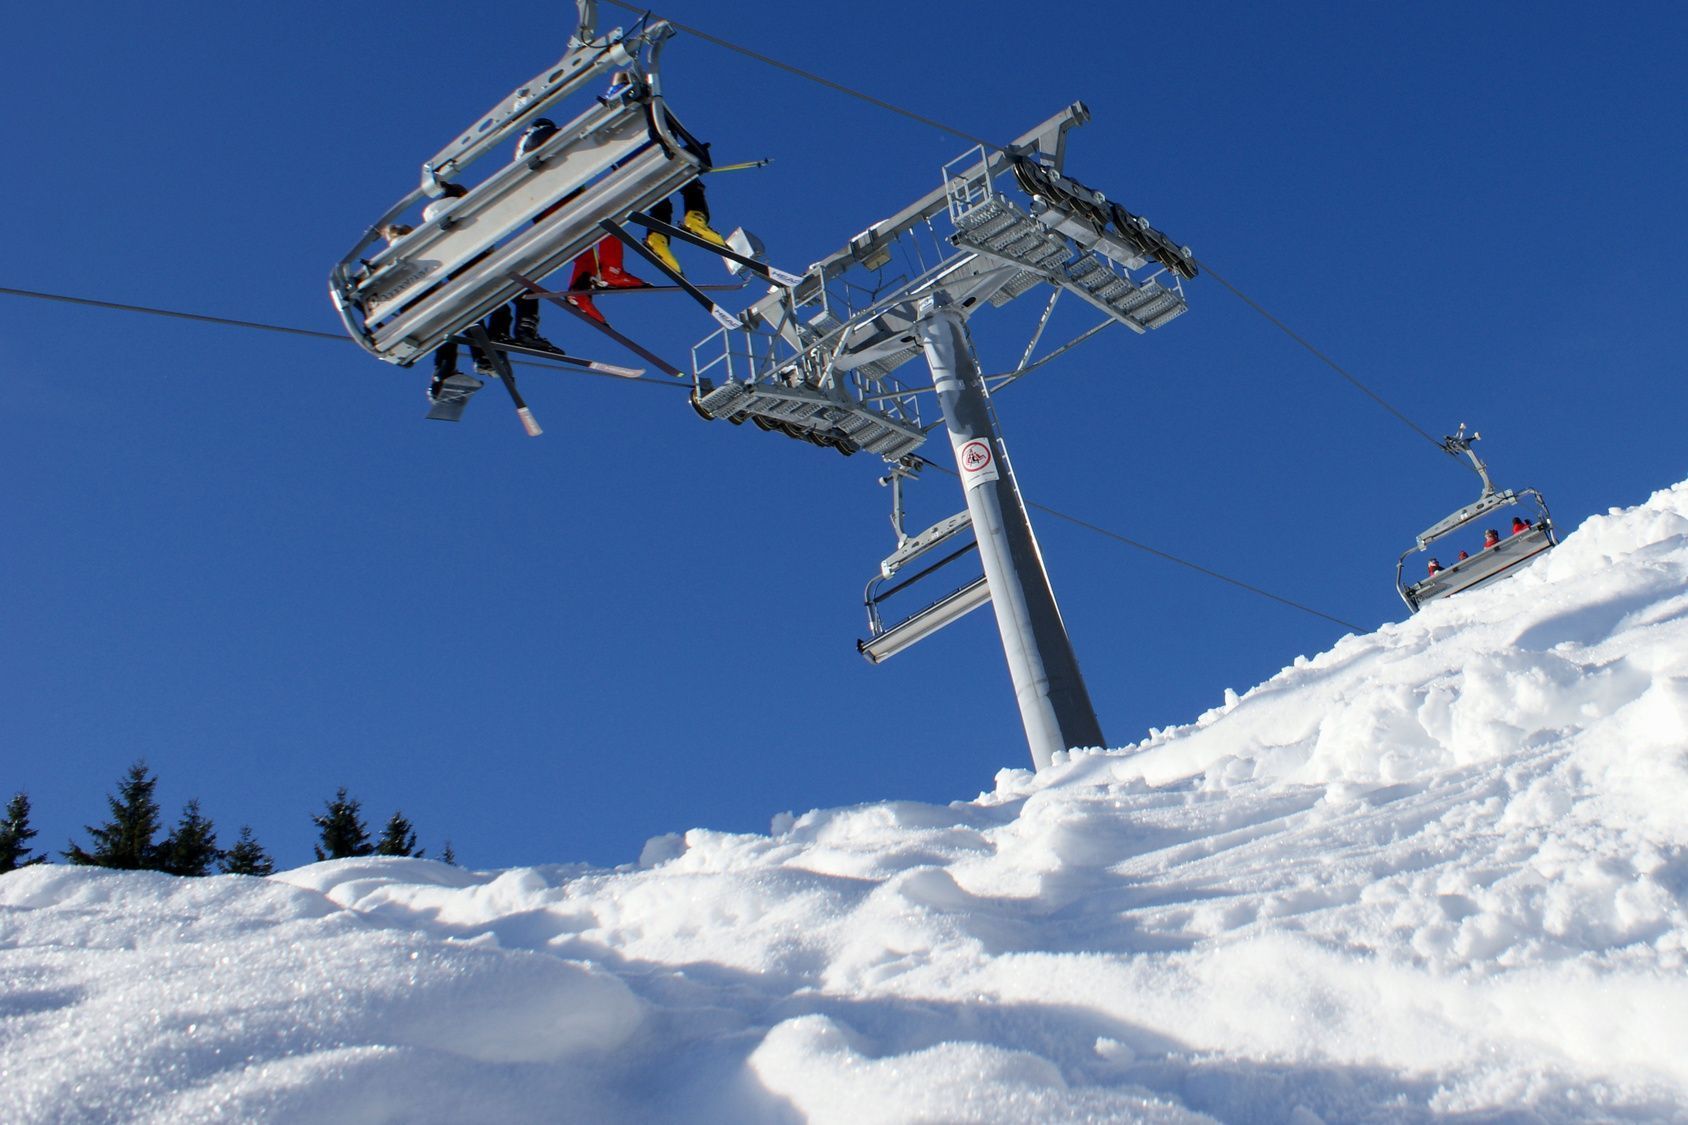 Ab ins Hochsauerland nach Winterberg: Hier warten während der Saison Schnee satt und tolle Pisten auf alle, die sich auf ein Skiwochenende oder einen ganzen Urlaub freuen.